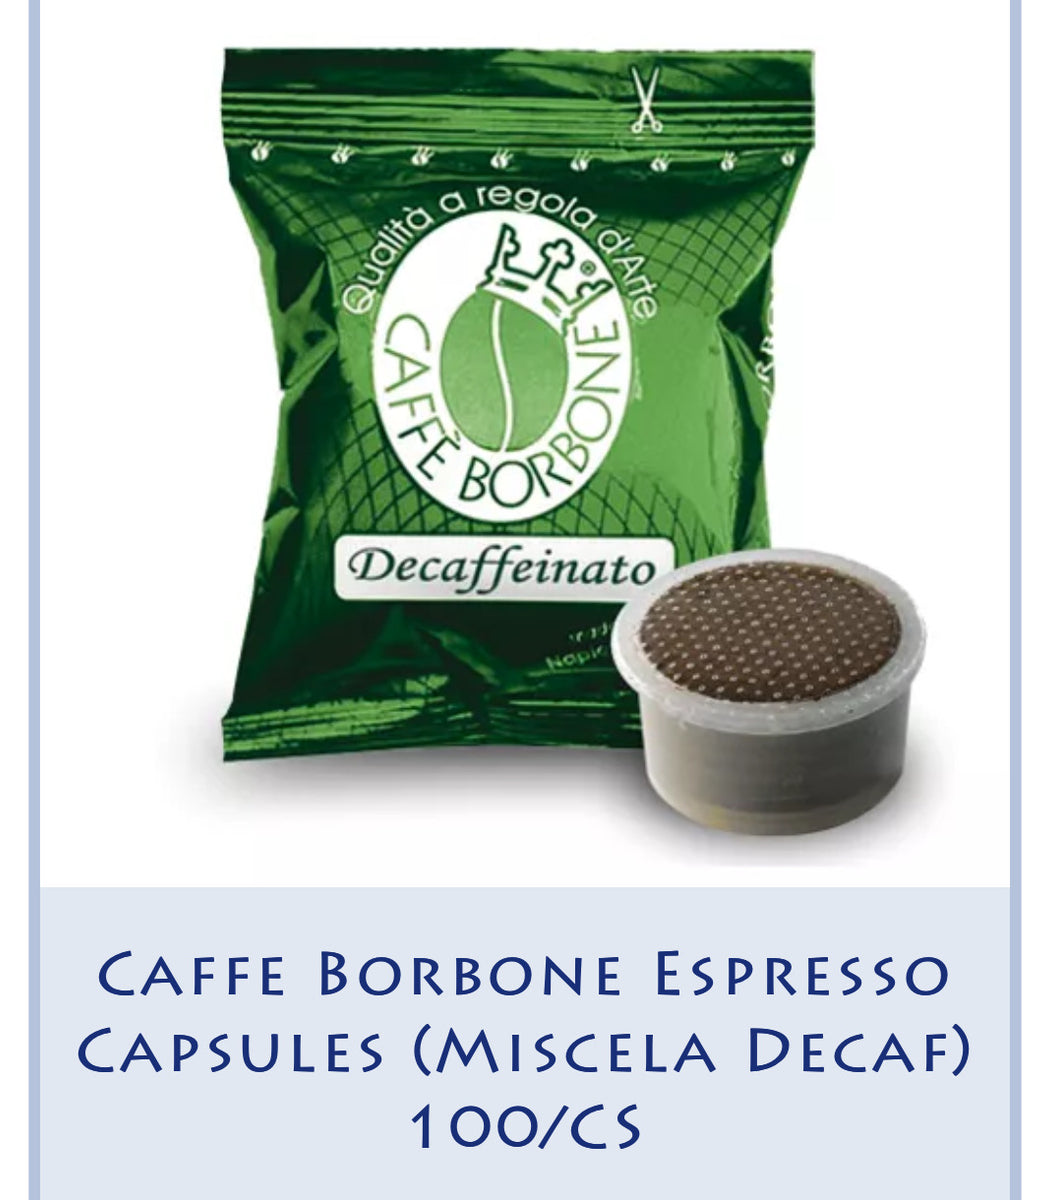 Caffe Borbone Espresso Capsules (Miscela Decaf) 100/CS